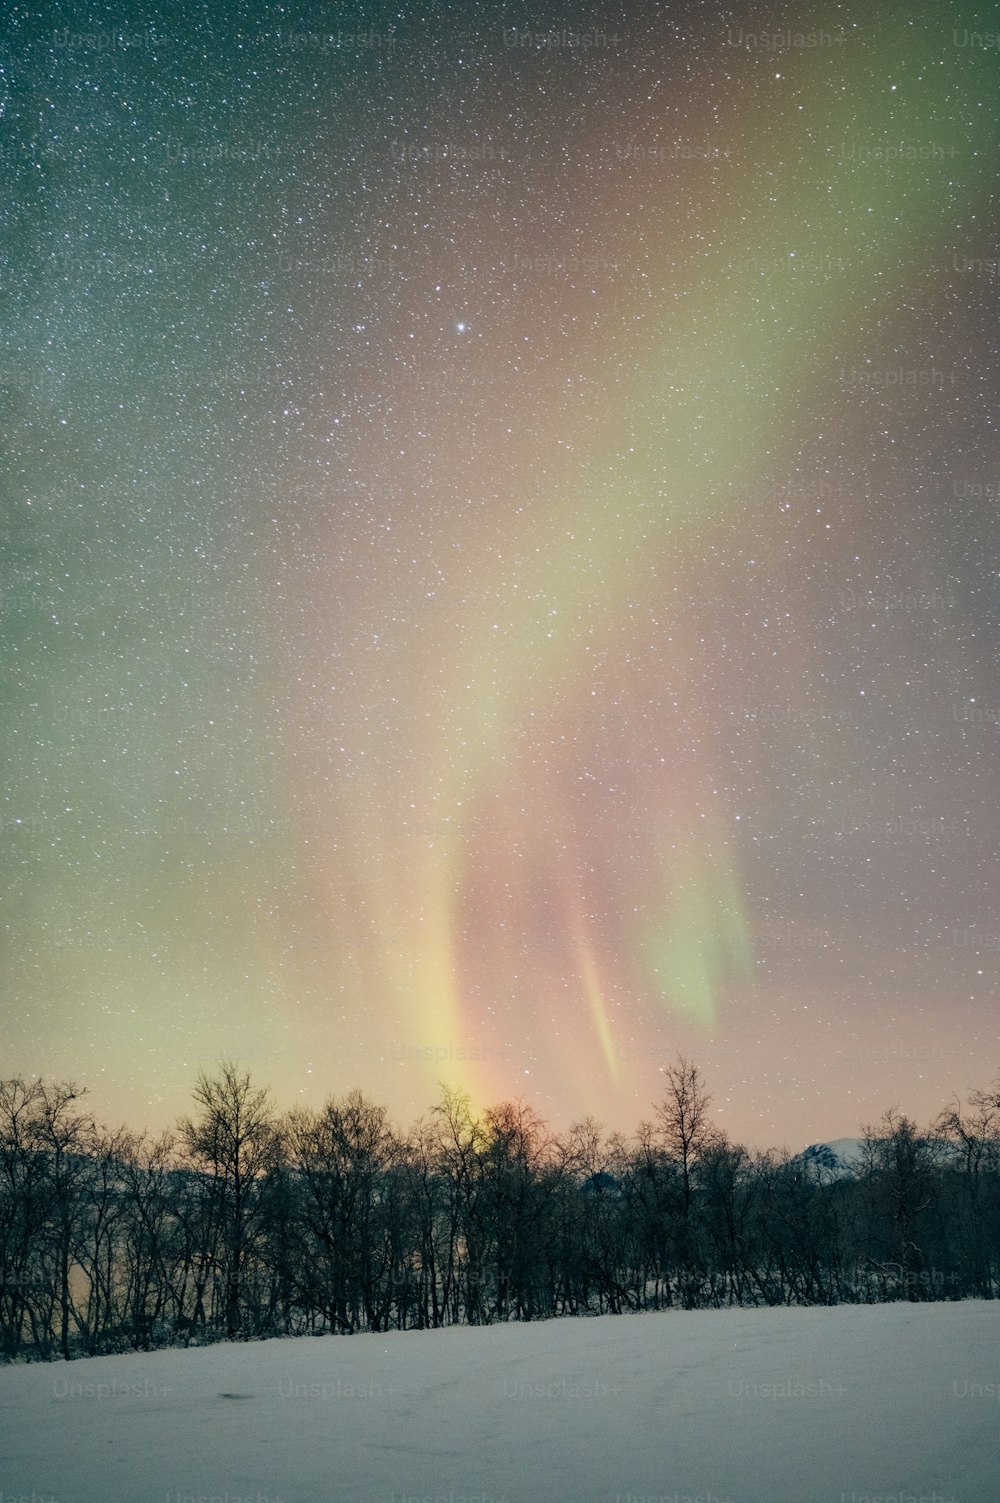 Les aurores boréales perçaient dans le ciel au-dessus d’un champ enneigé